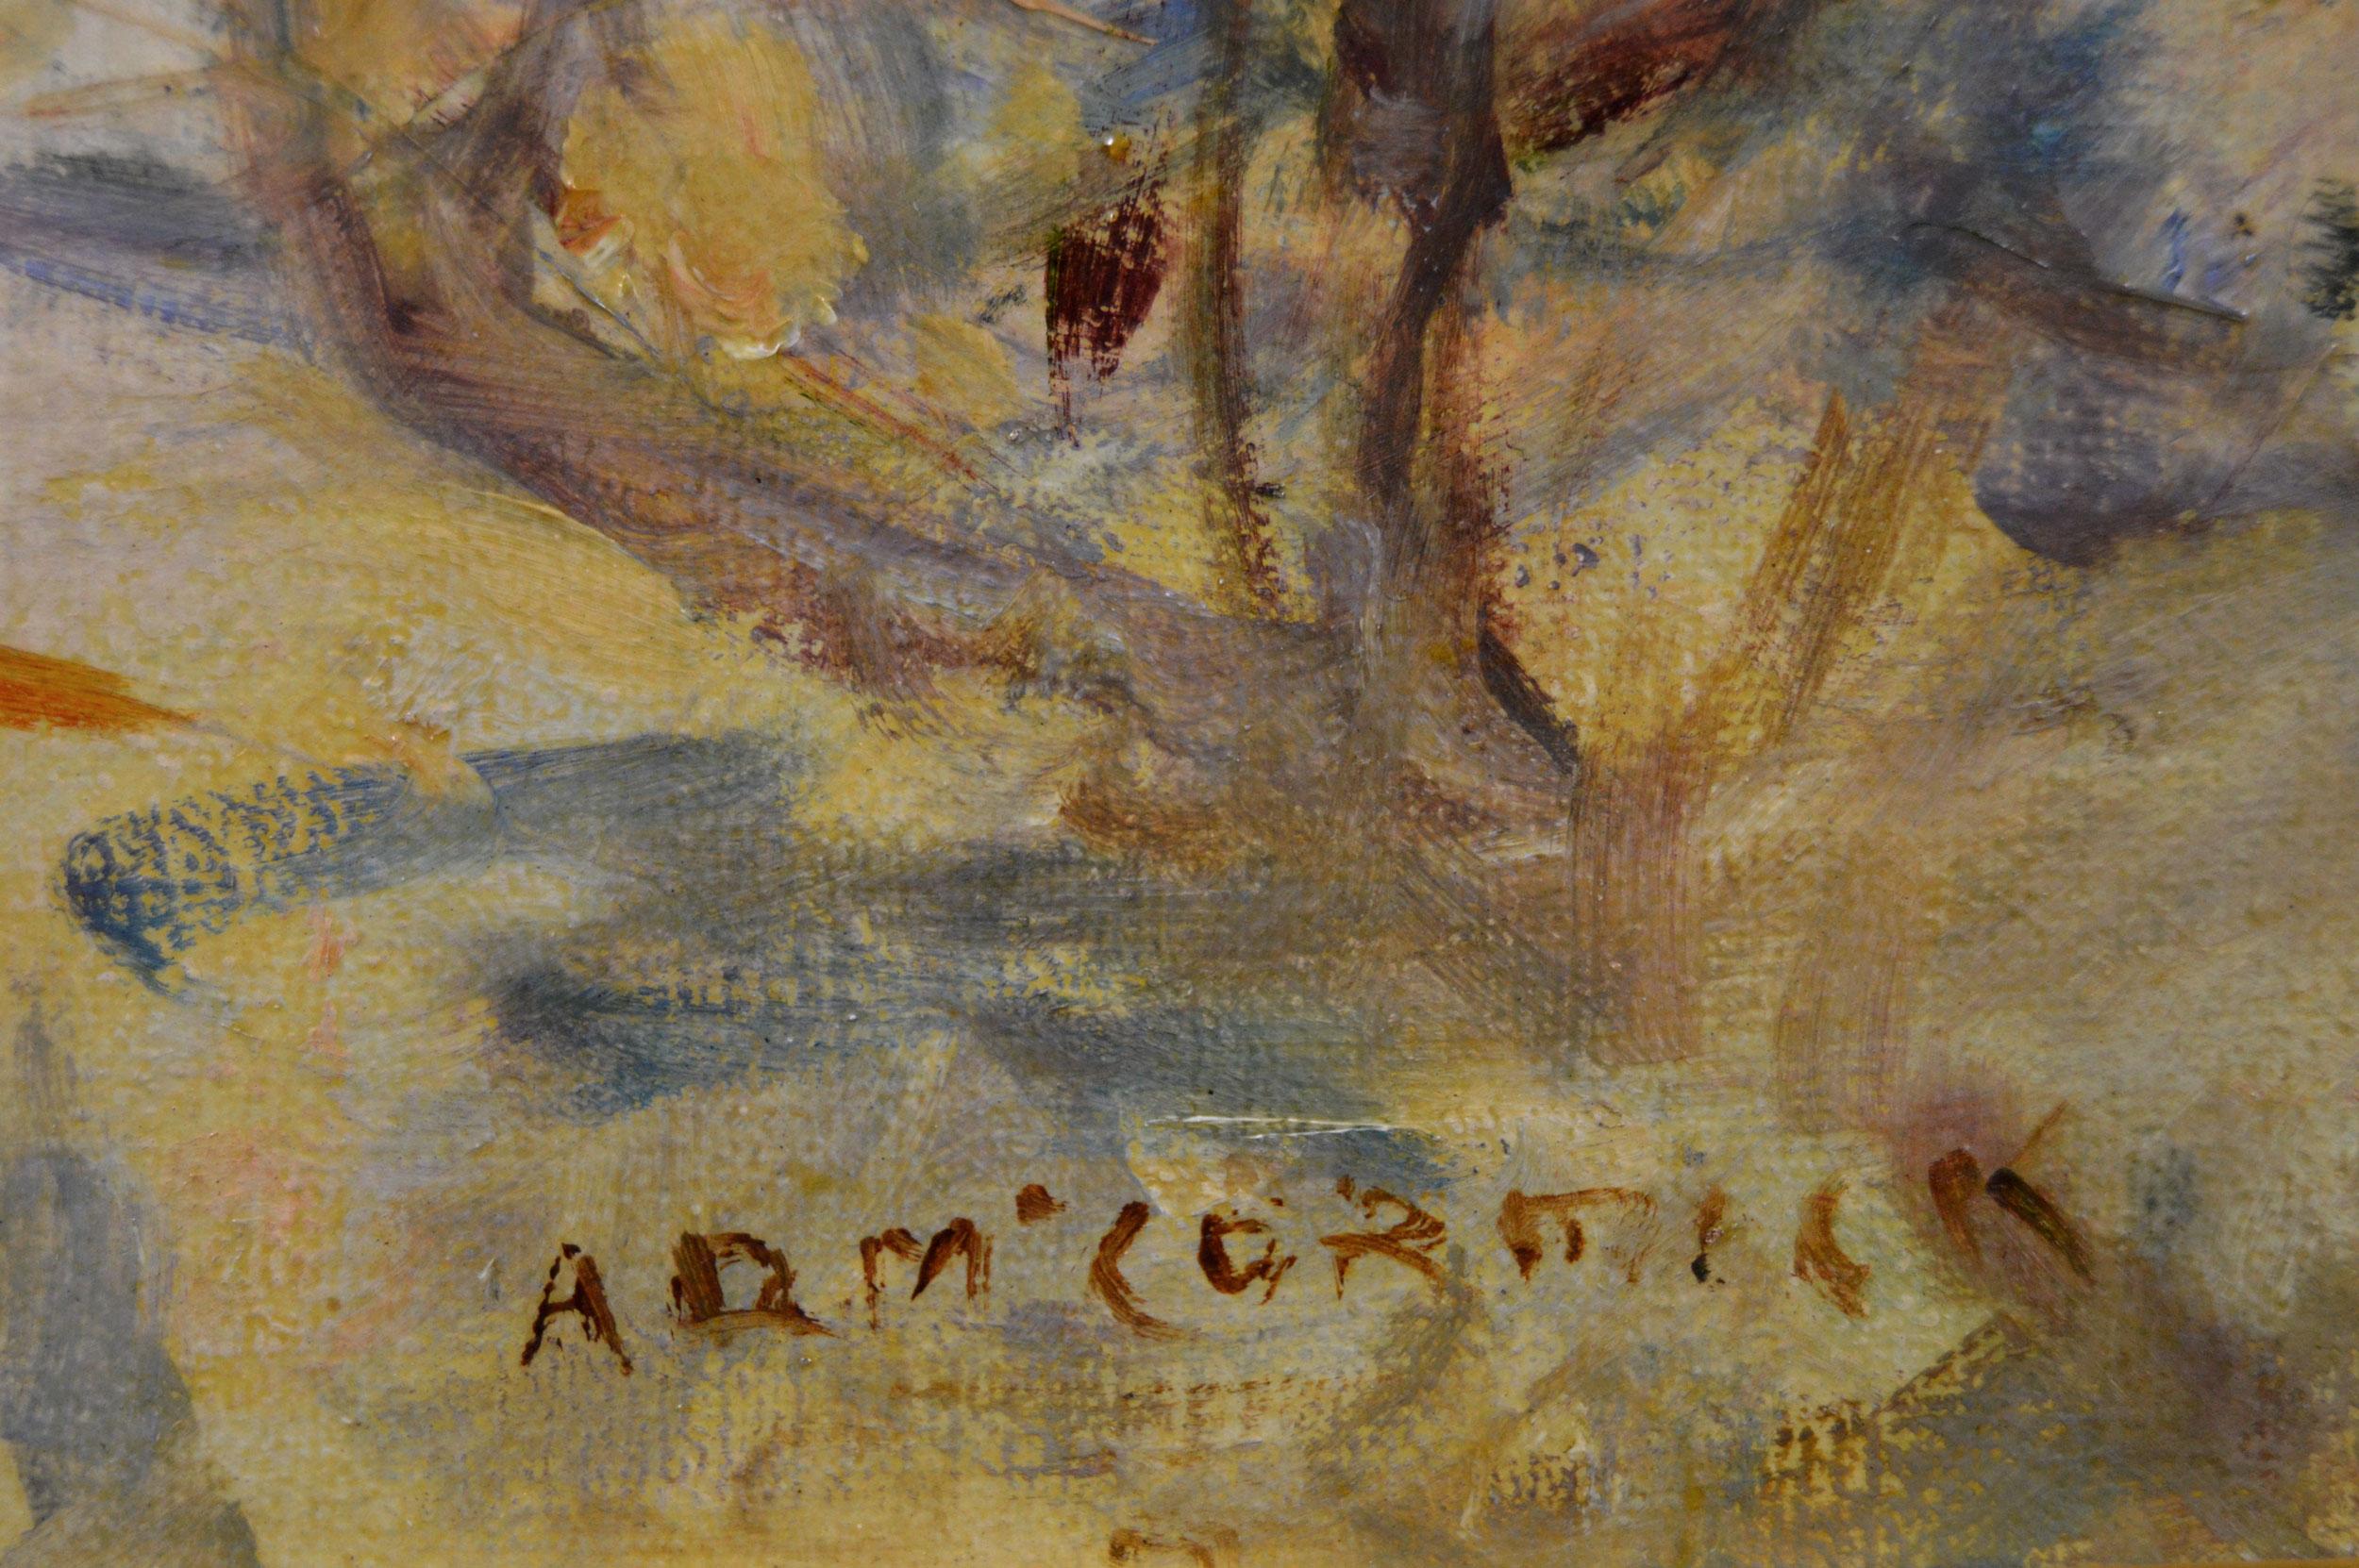 Arthur David Mccormick
Irisch/Britisch, (1860-1943)
Die königliche Fanfare
Öl auf Leinwand, signiert
Bildgröße: 23,5 Zoll x 17,5 Zoll 
Größe einschließlich Rahmen: 31,5 Zoll x 25,5 Zoll
Provenienz: Frost & Reed

Ein wunderschönes historisches